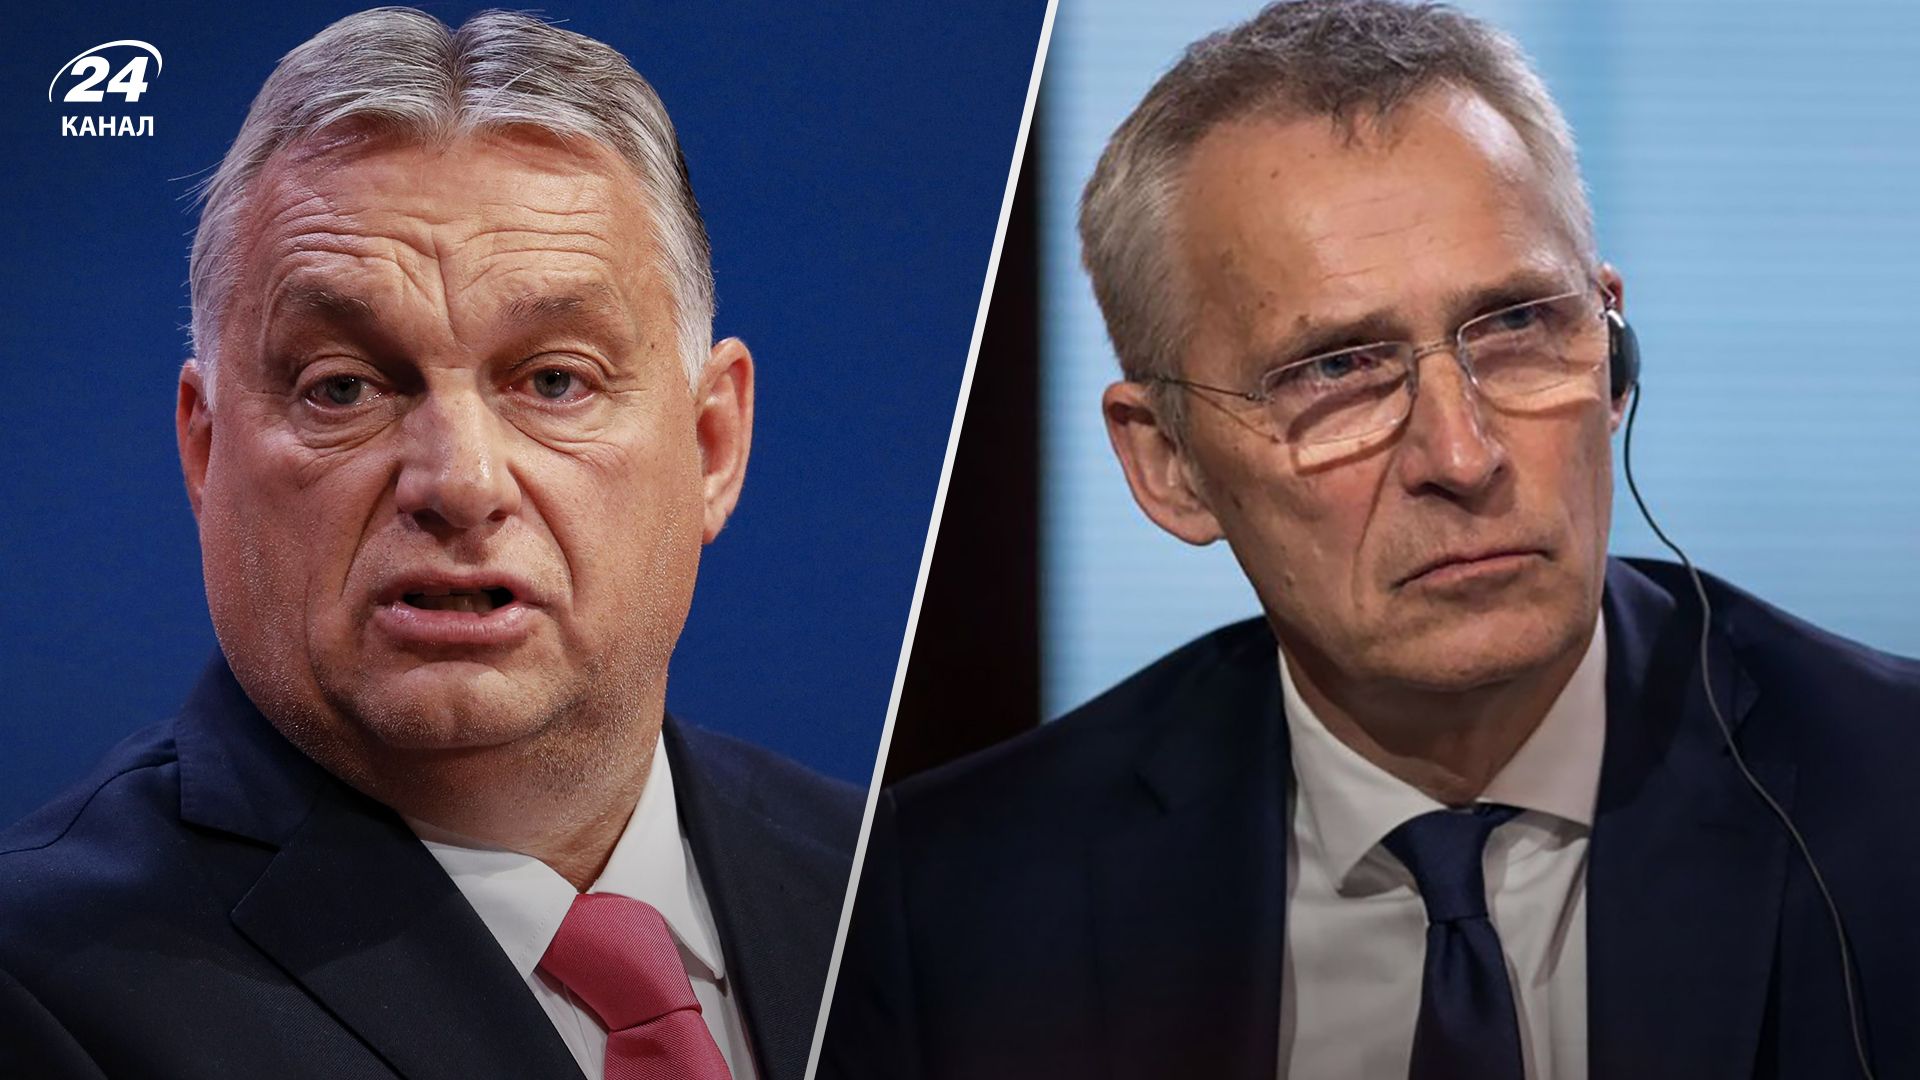 Виктор Орбан возмущен заявлением Йенса Столтенберга о будущем Украины в НАТО.